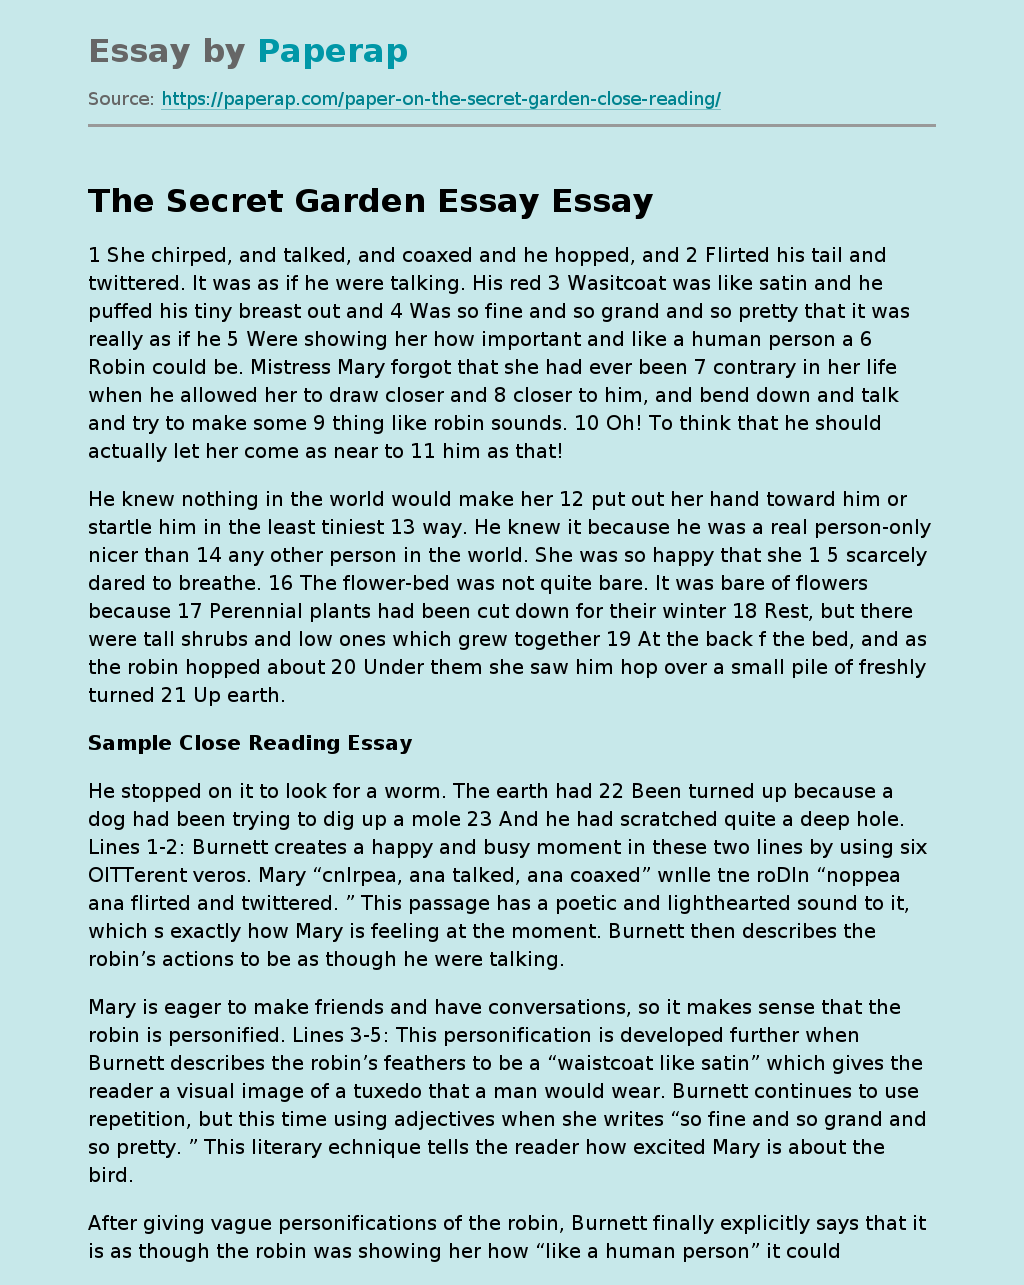 The Secret Garden Is a Novel by Frances Hodgson Burnett